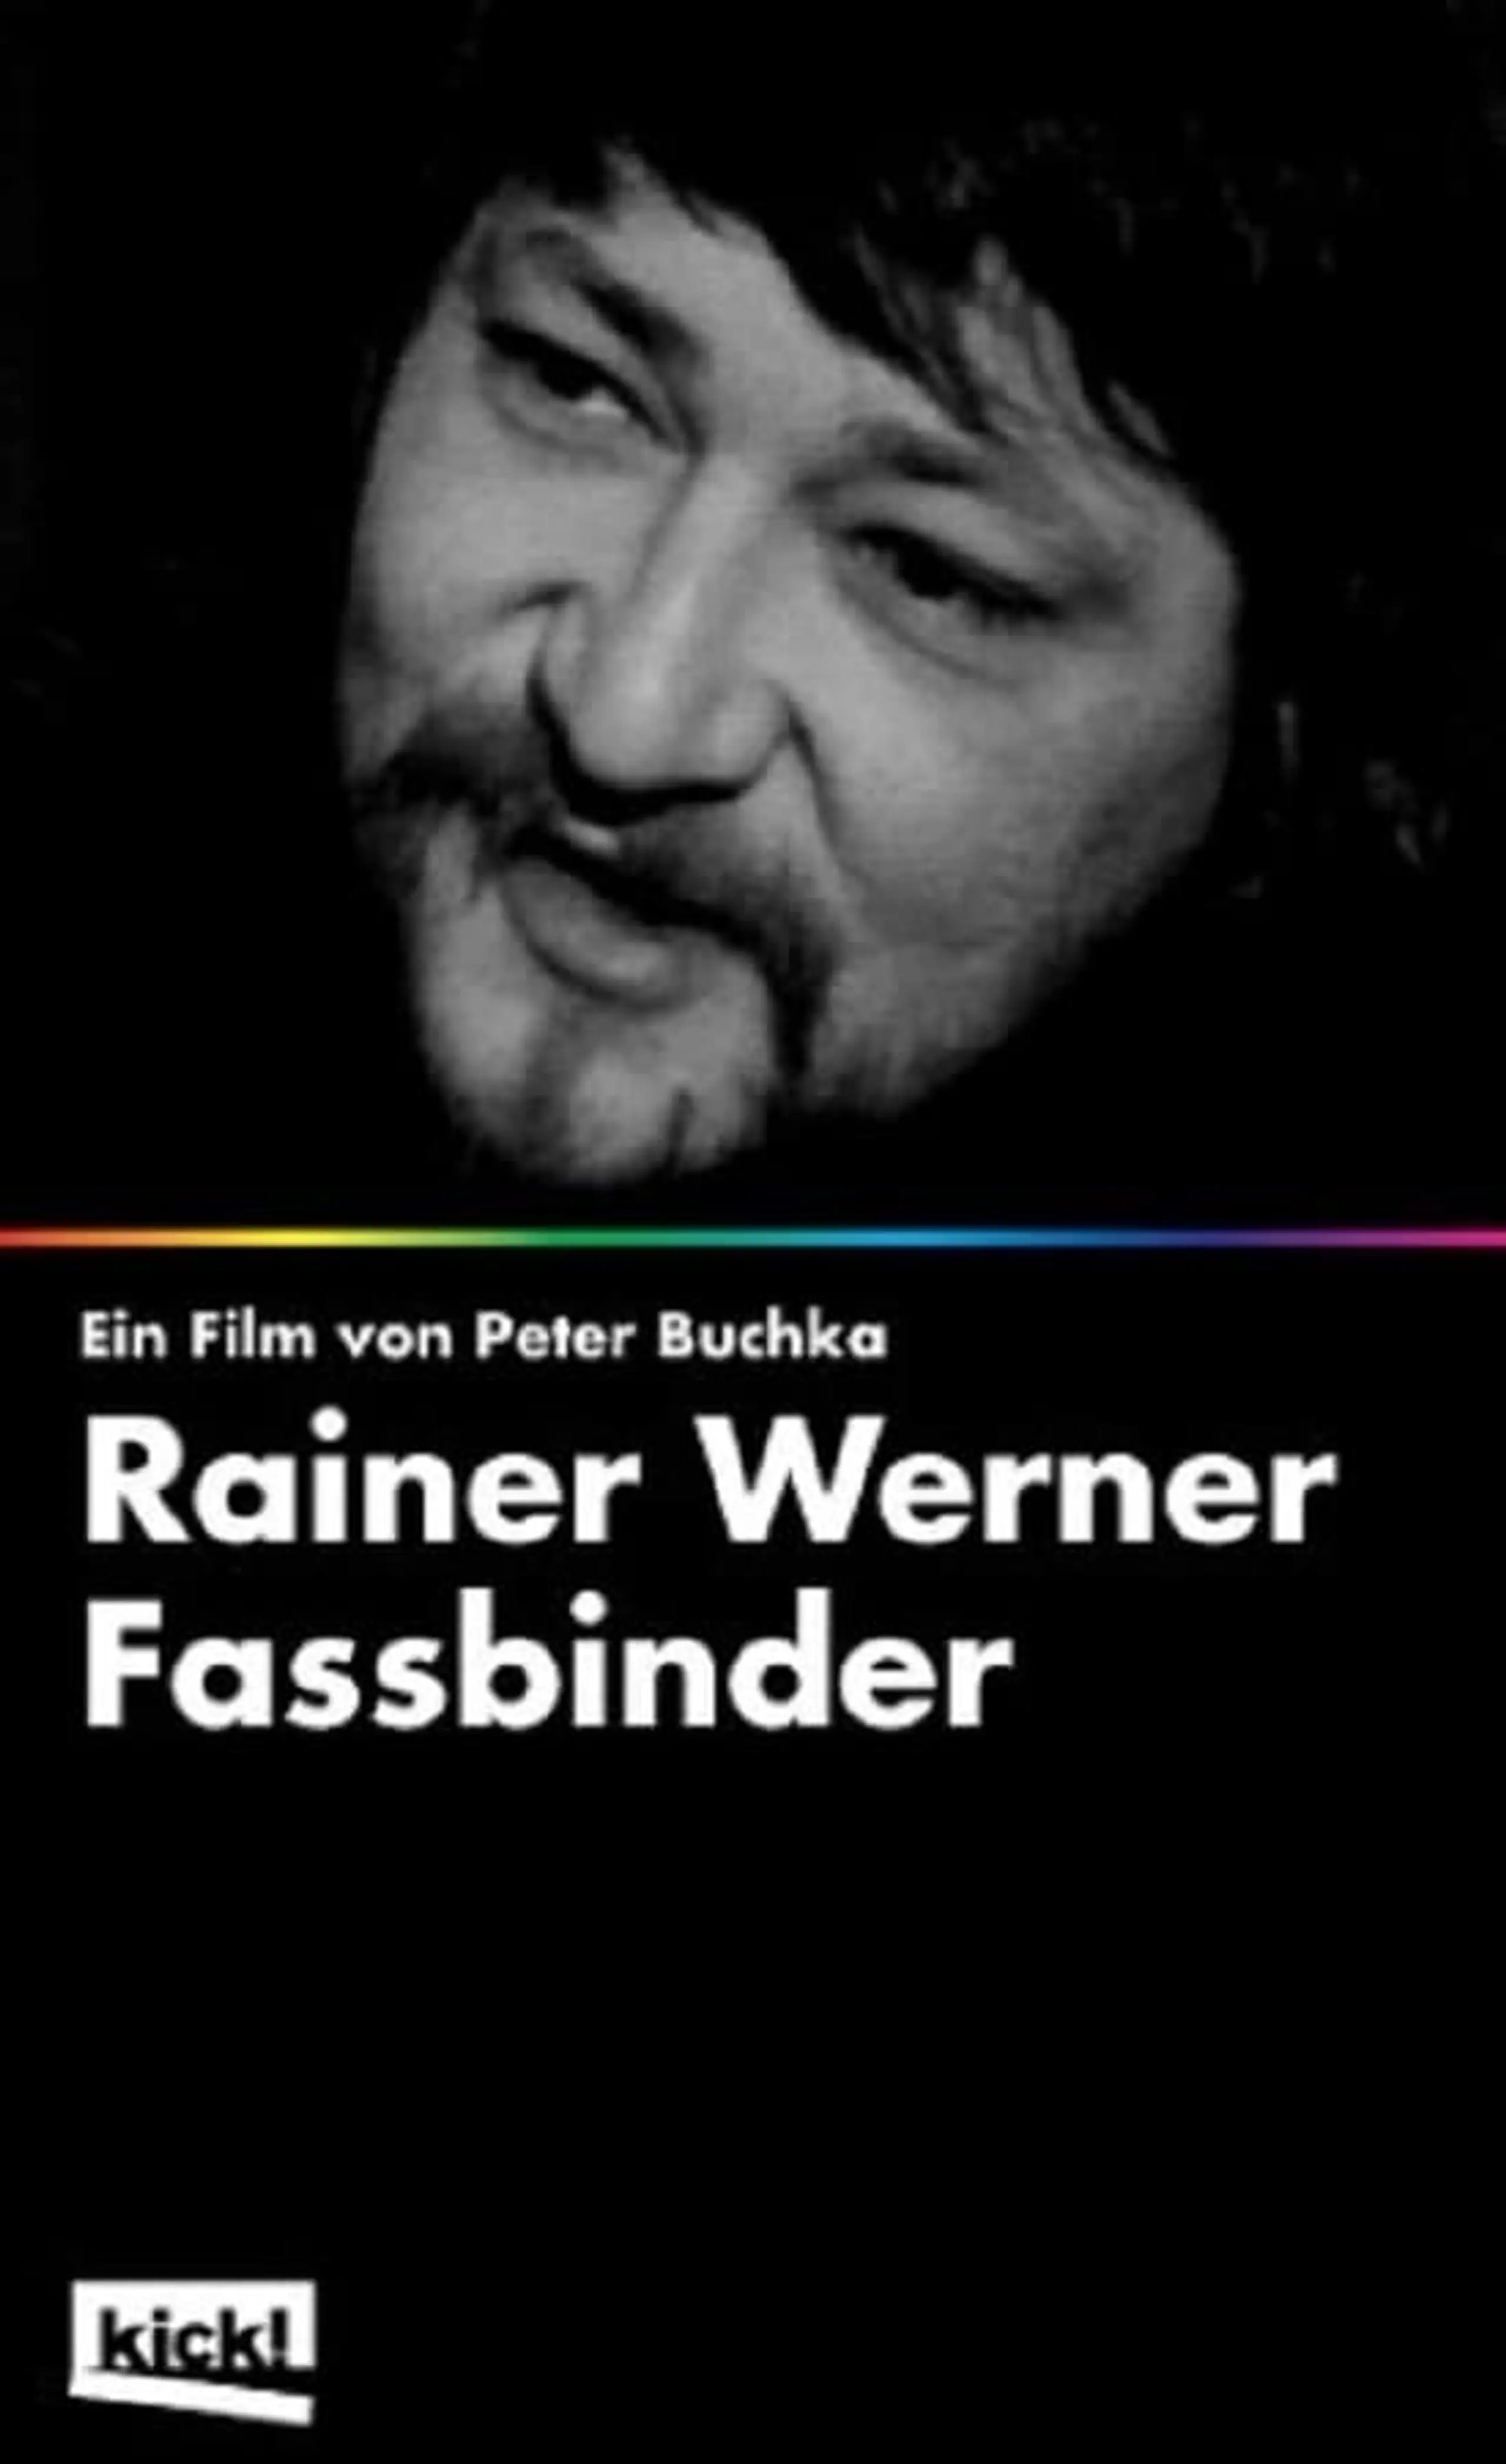 Es ist Nicht Gut in einem Menschenleib zu Leben - Das Filmische Weltgericht des Rainer Werner Fassbinder